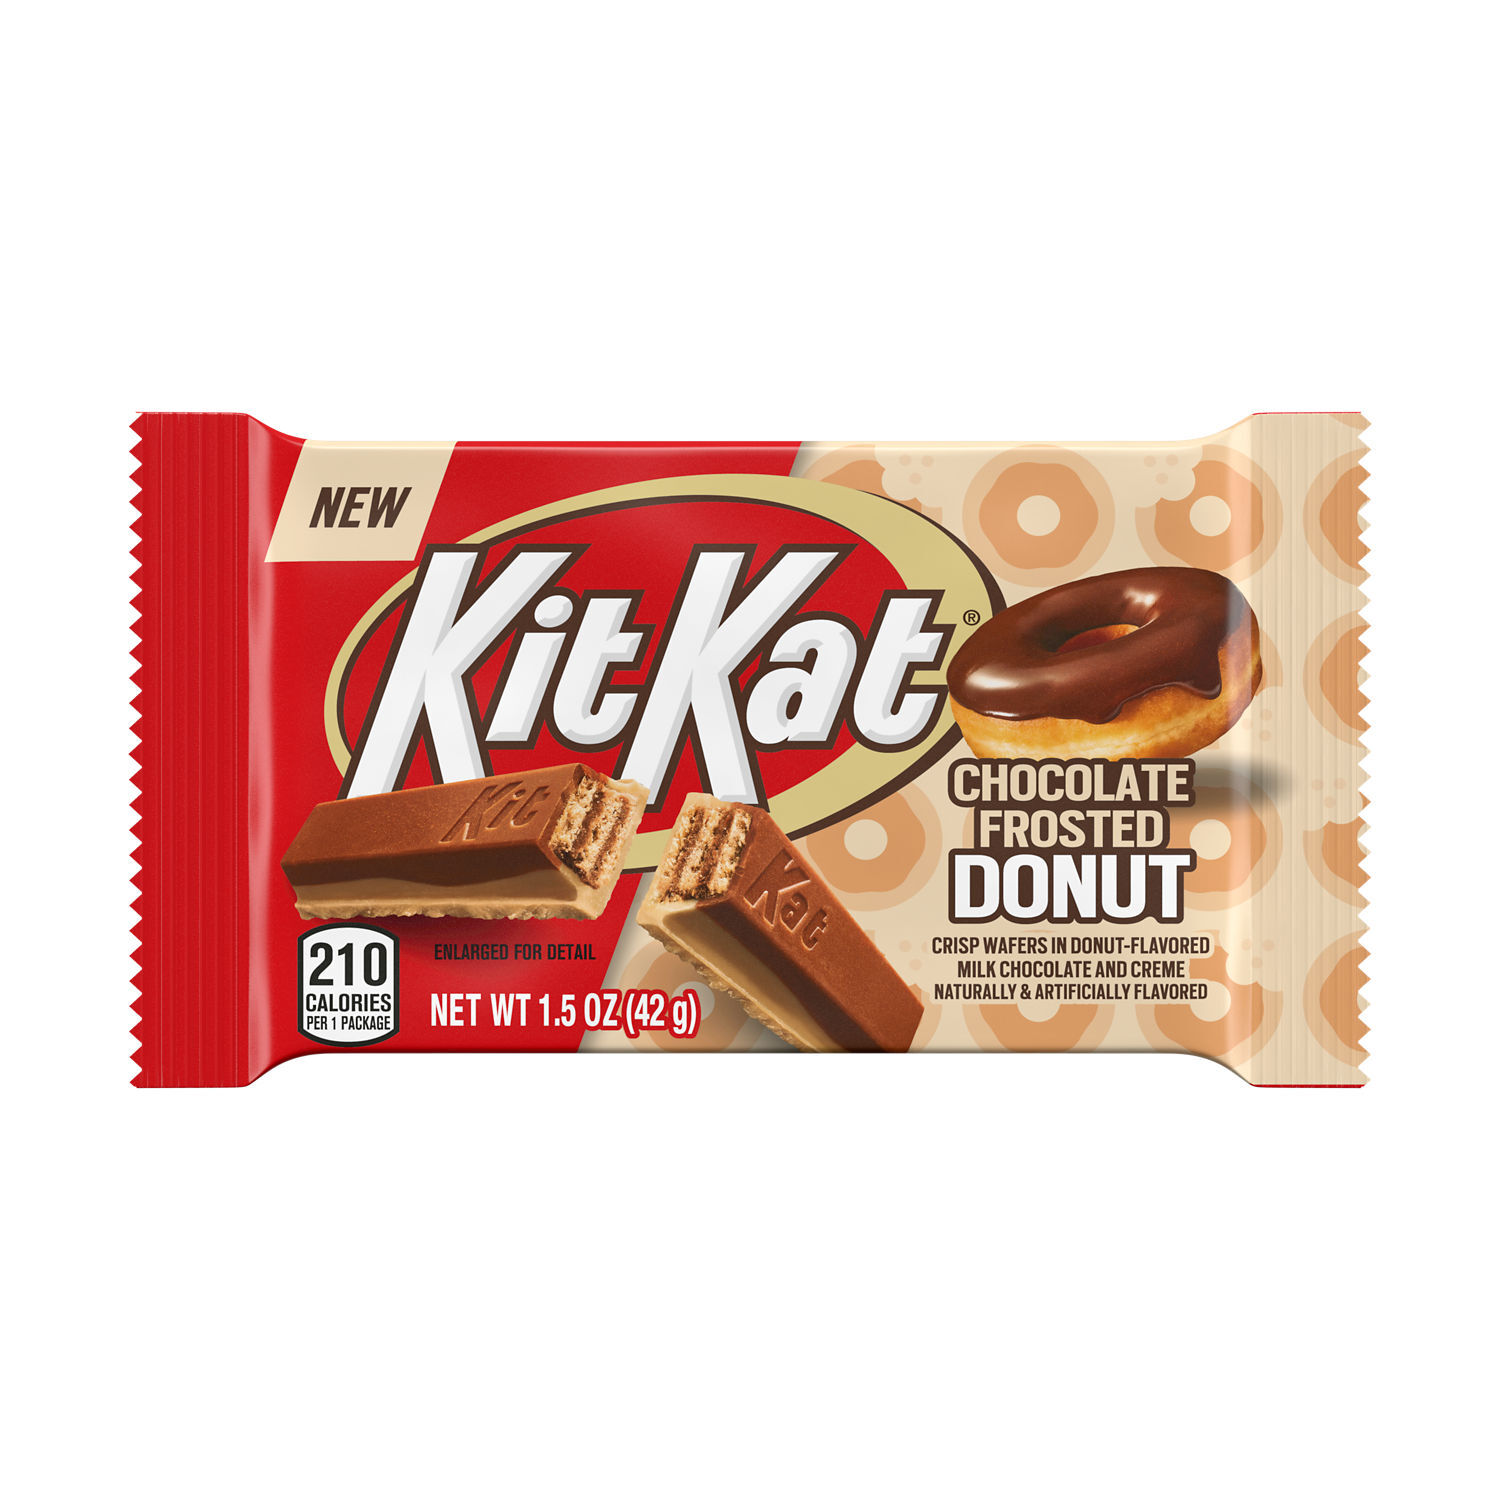 Kit Kat Gift Box – IT'SUGAR